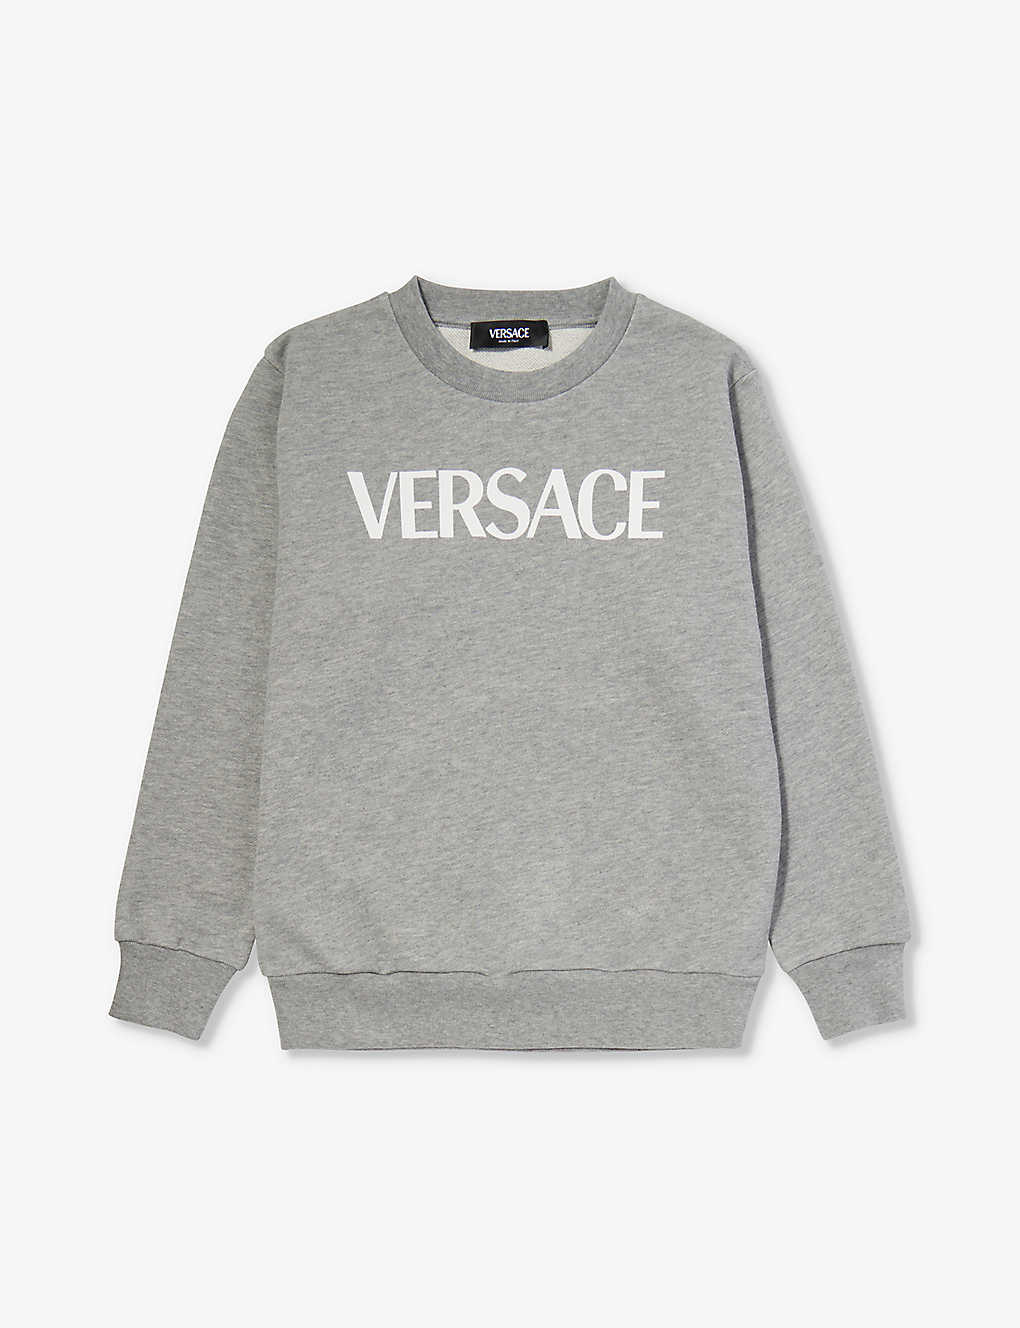 Versace Teen Boys Grey Sweatshirt